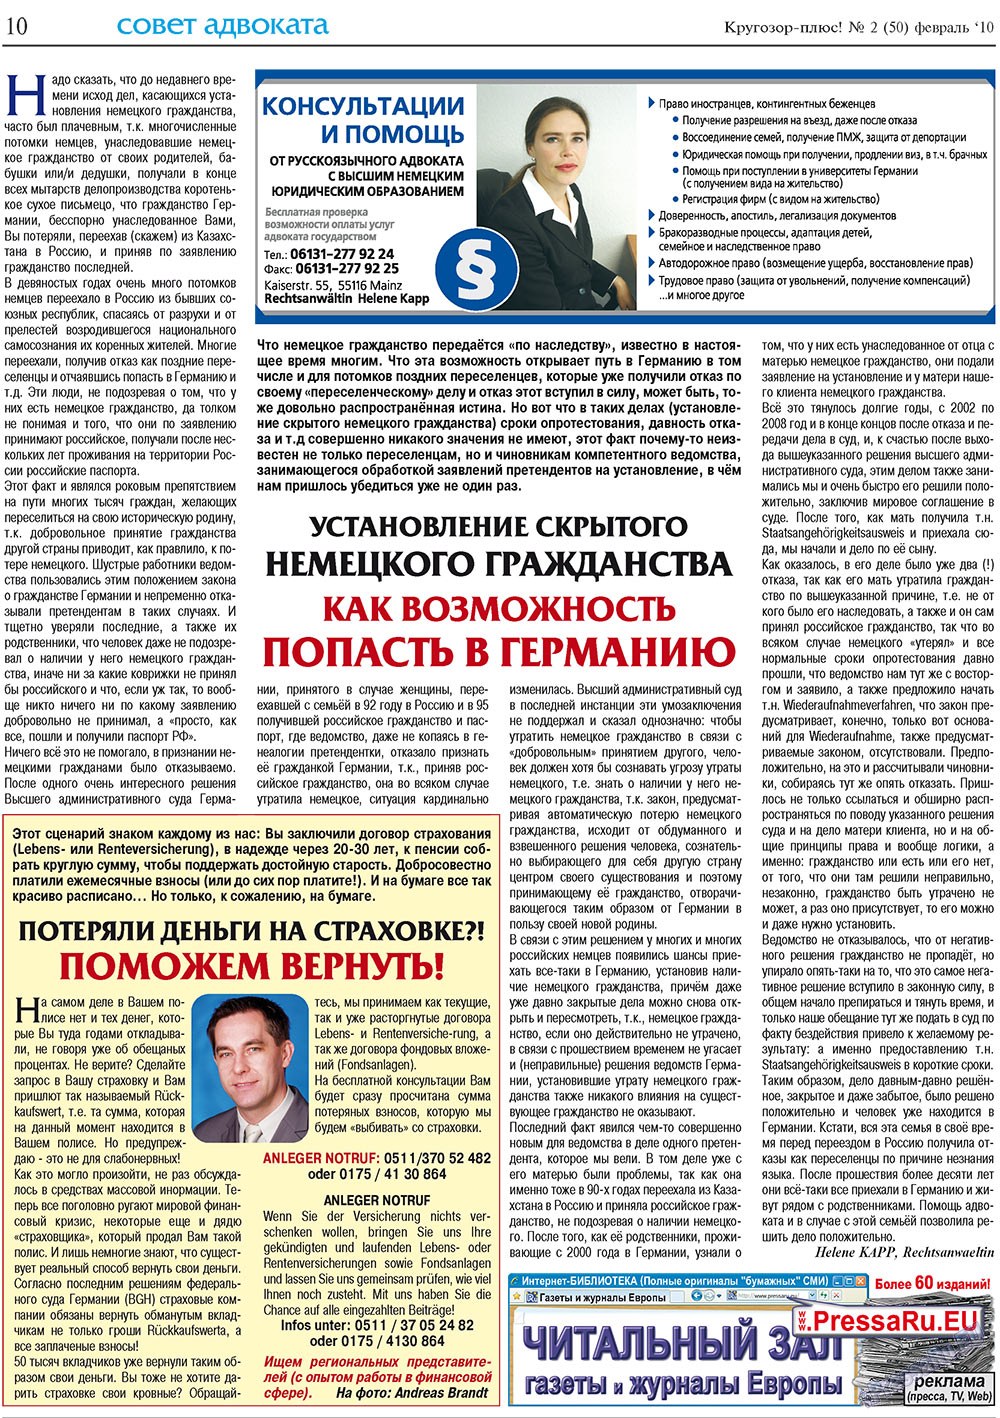 Кругозор плюс!, газета. 2010 №2 стр.10